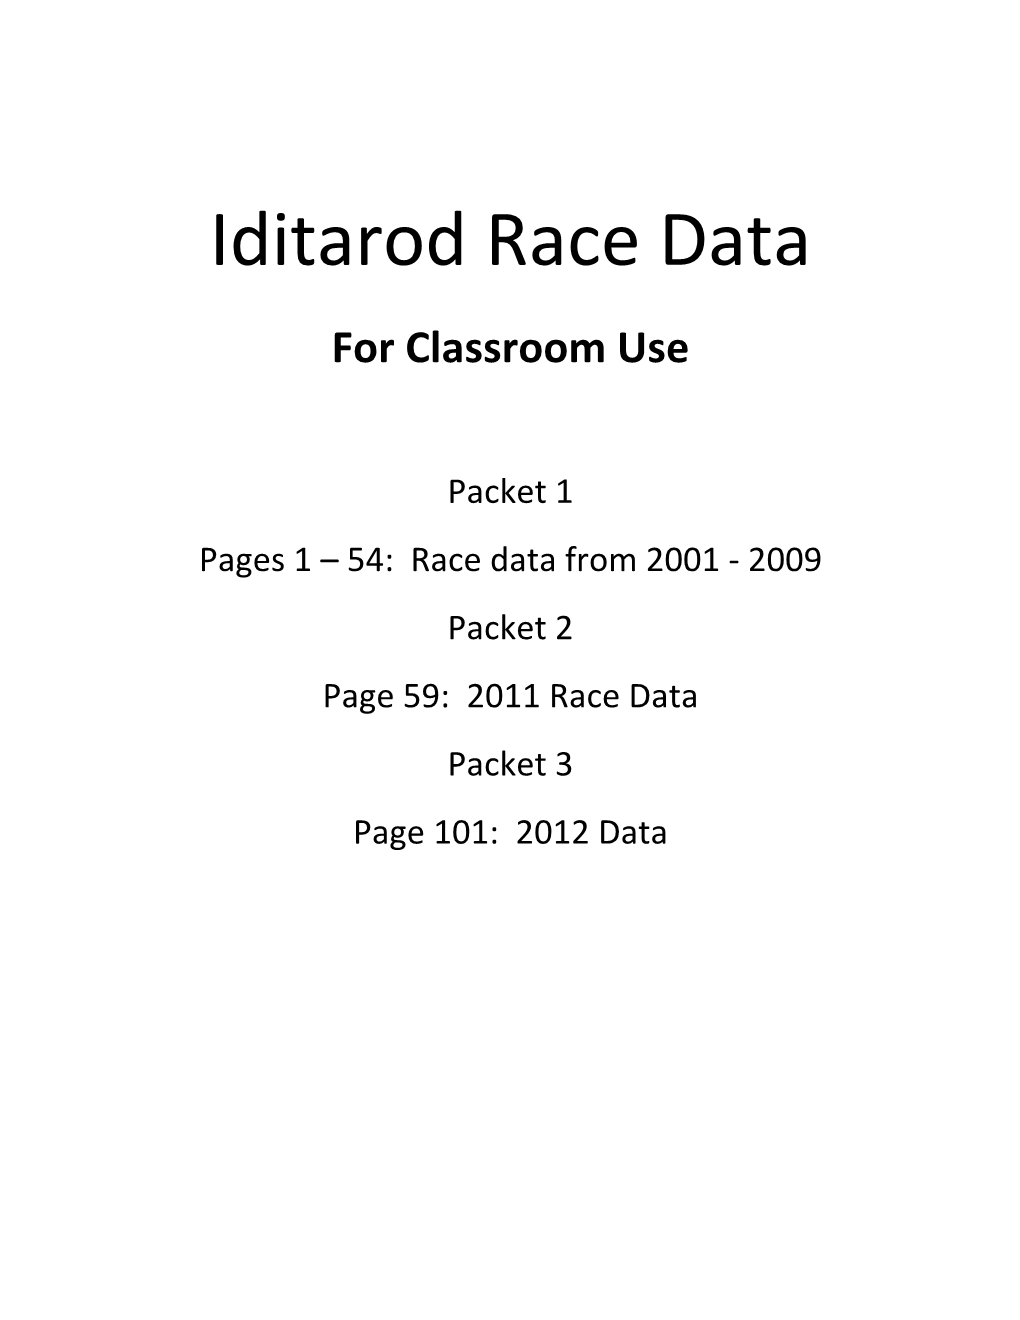 Iditarod Race Data for Classroom Use